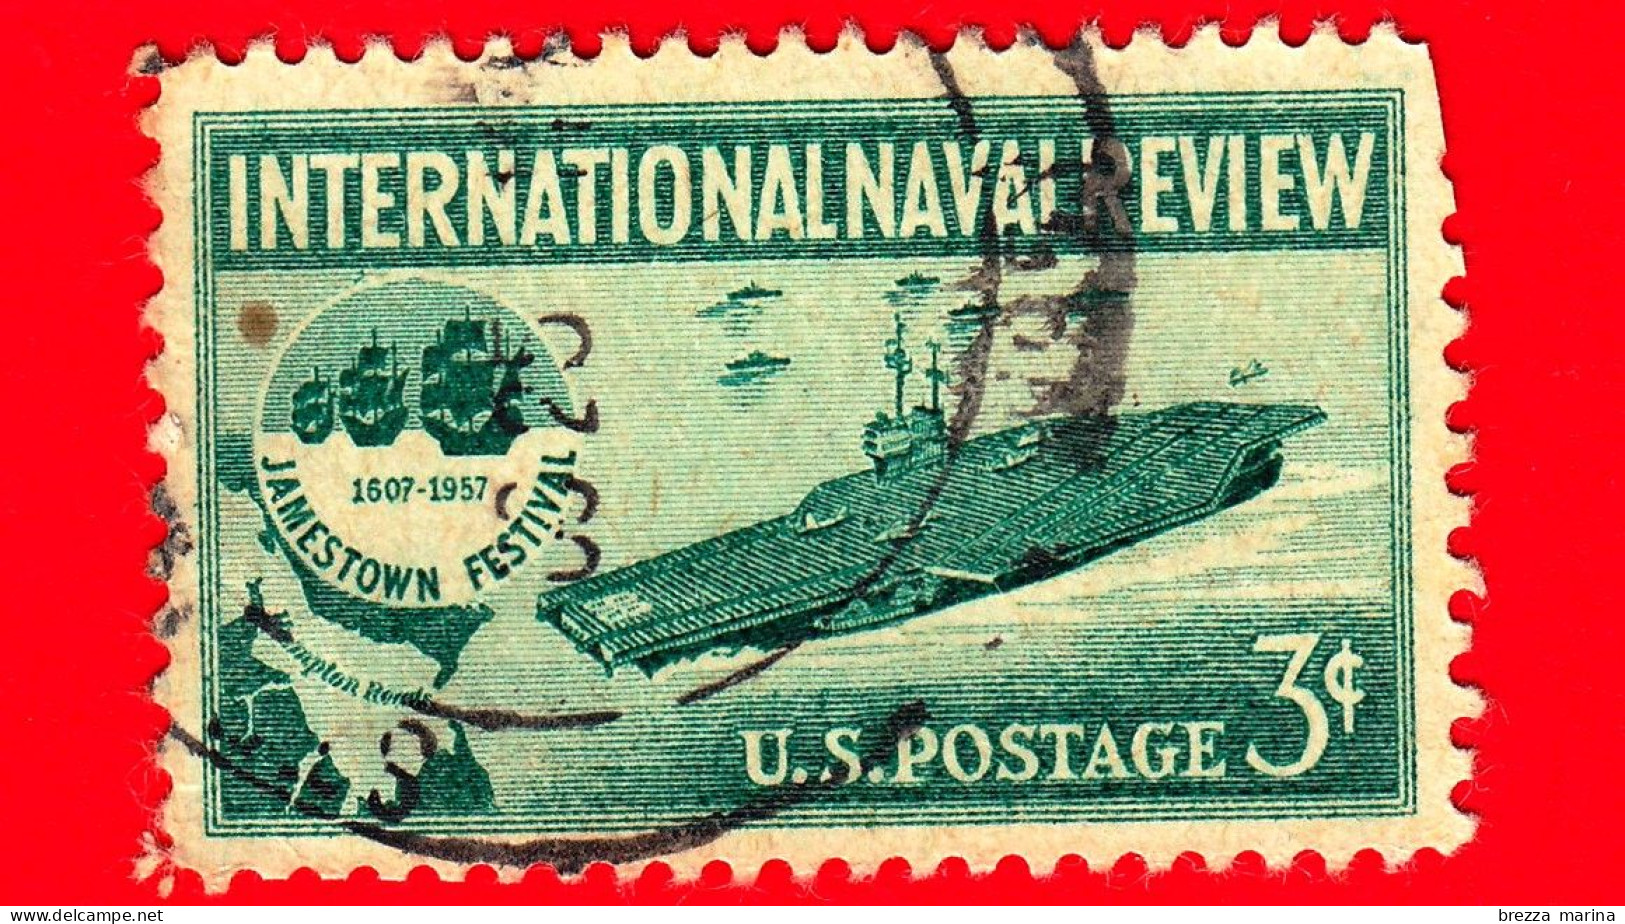 USA - STATI UNITI - Usato - 1957 - Rassegna Navale Internazionale - Portaerei Ed Emblema Del Jamestown Festival - 3 - Used Stamps